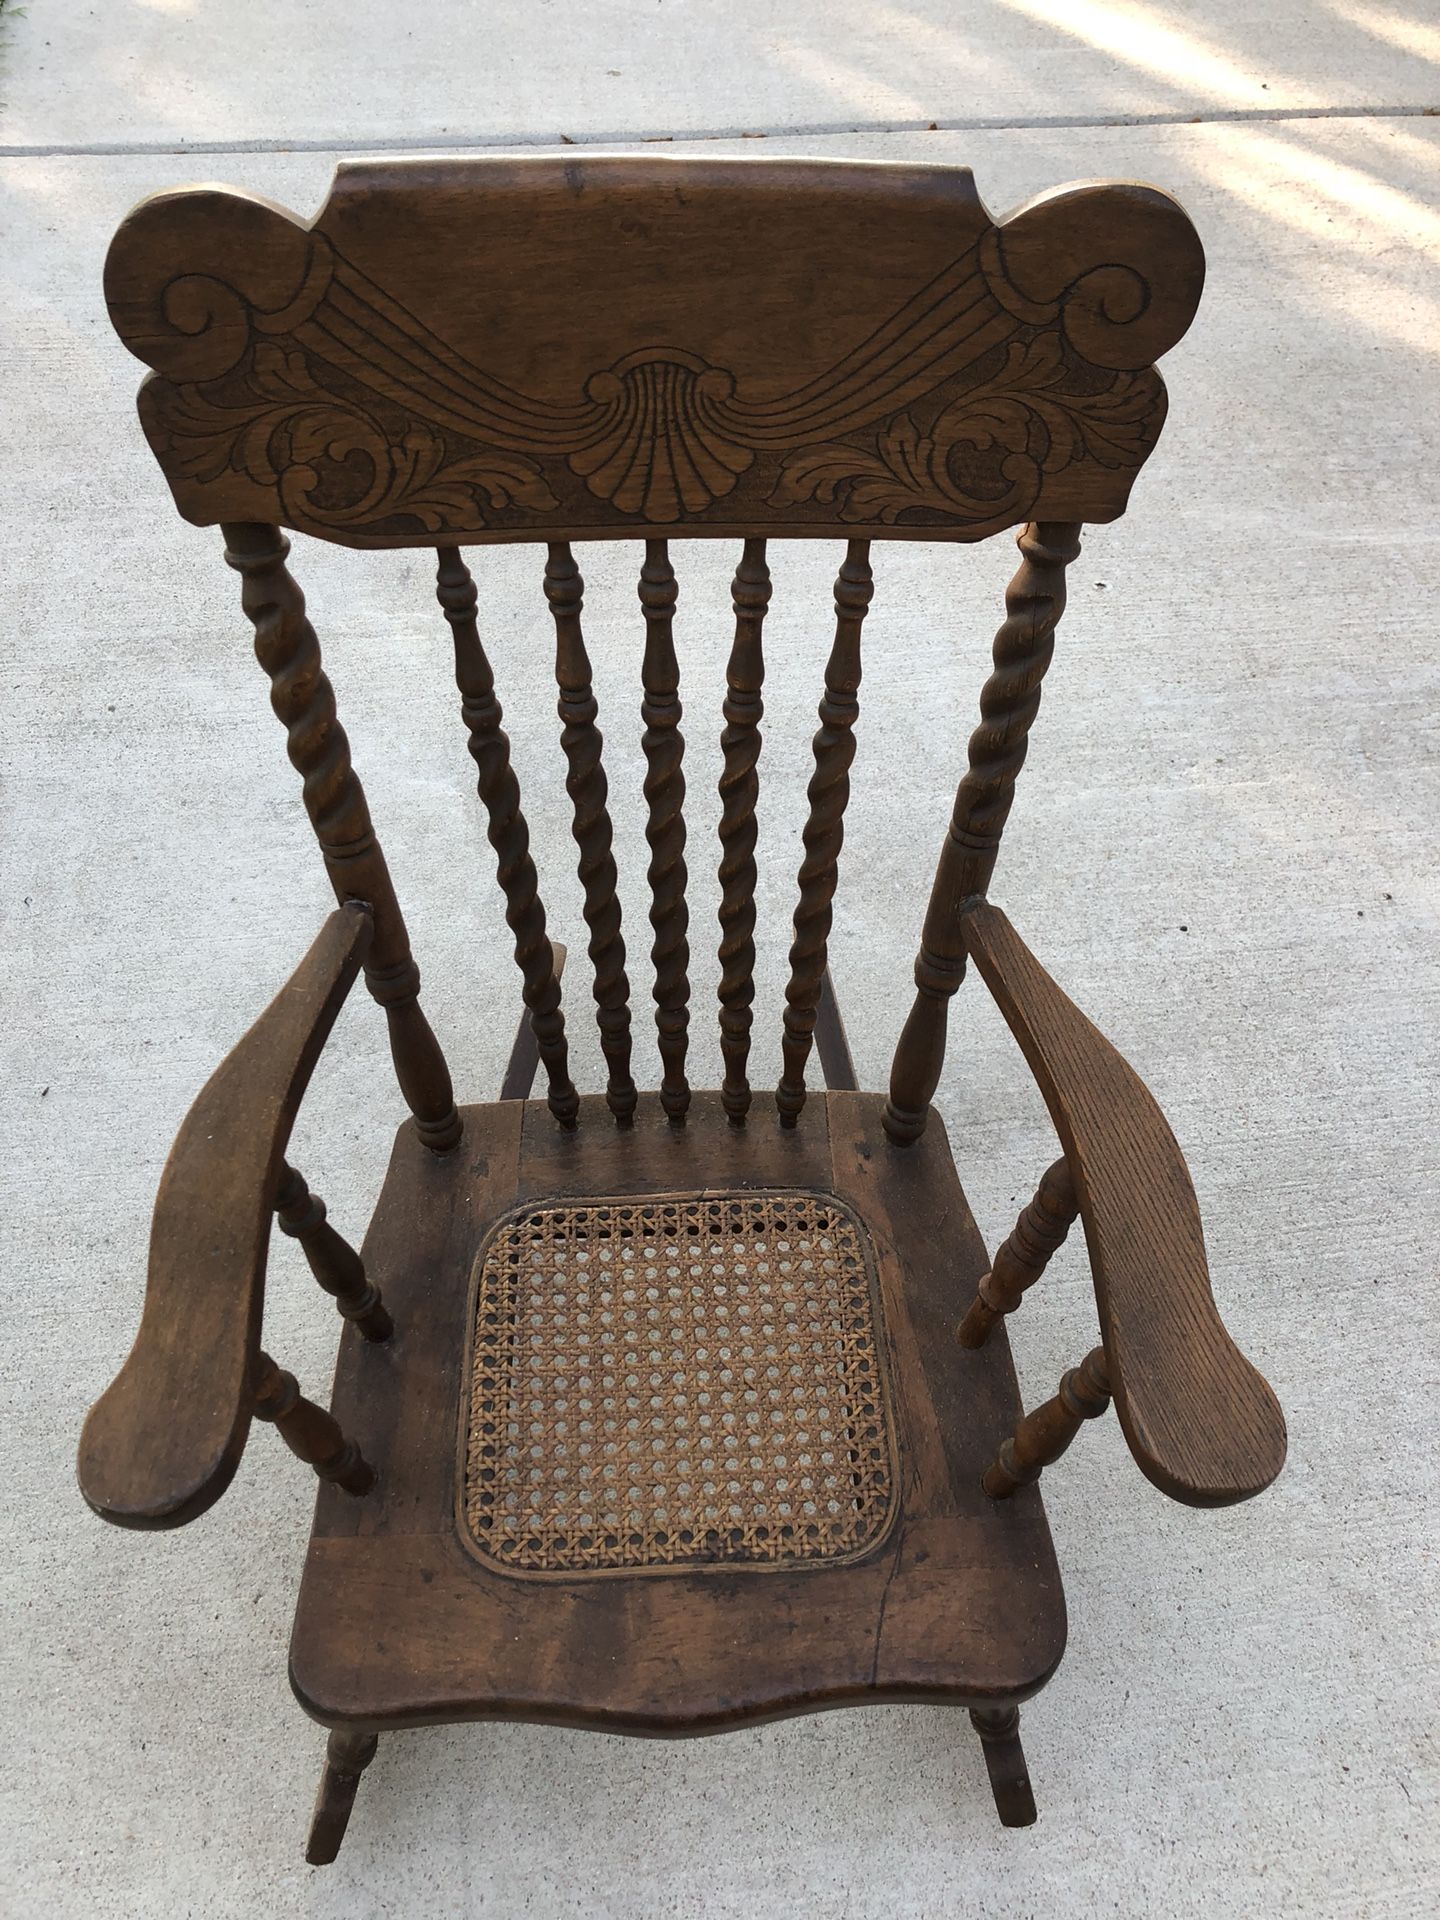 Antique child’s rocking chair